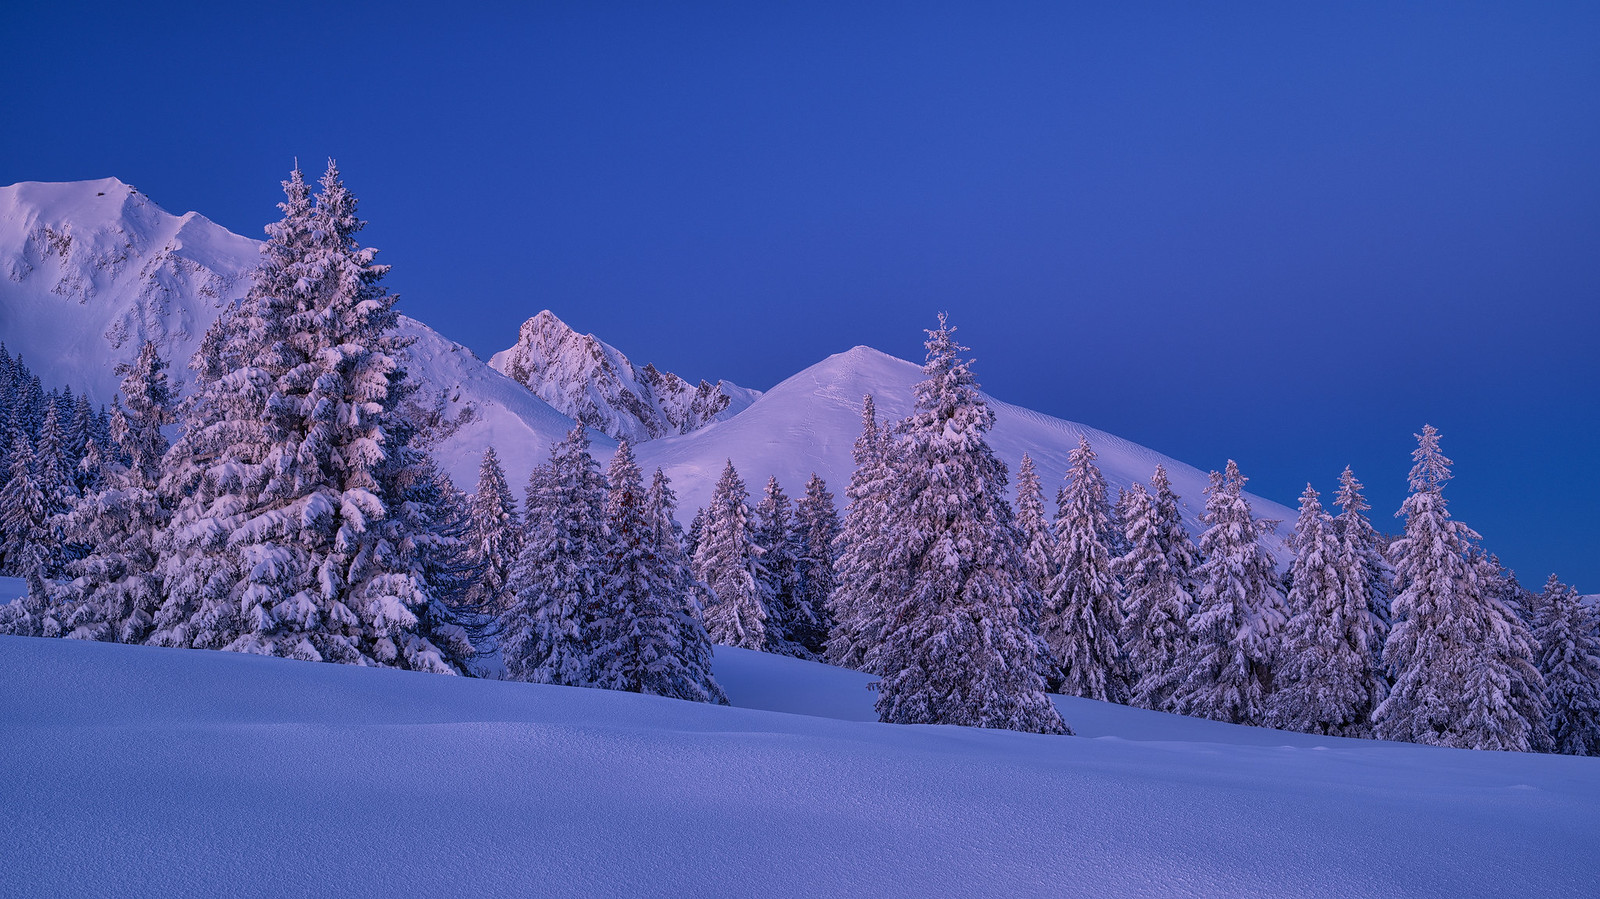 Winter wonder land - Gantrisch